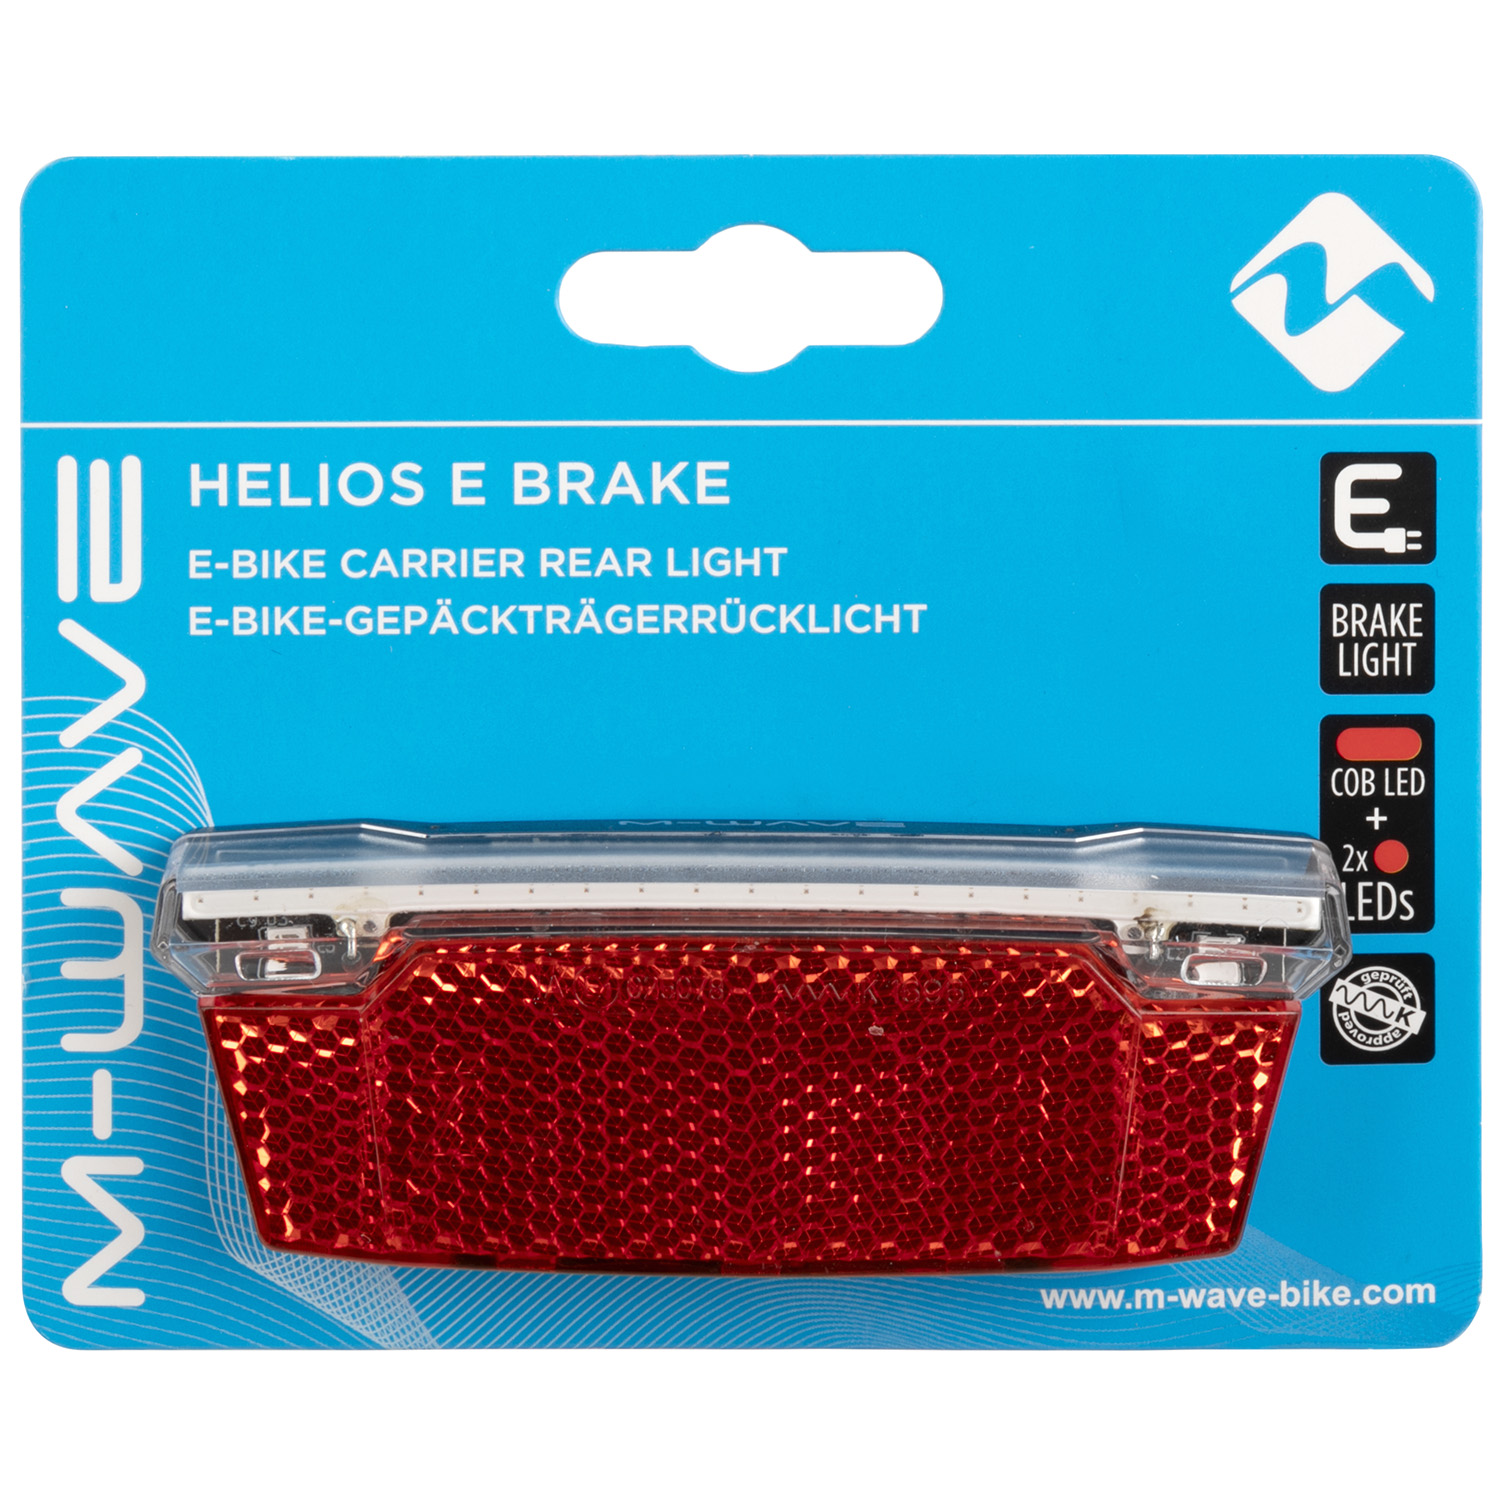 LED-Rücklicht mit BREMSLICHT-Funktion HELIOS E Brake SB verpackt